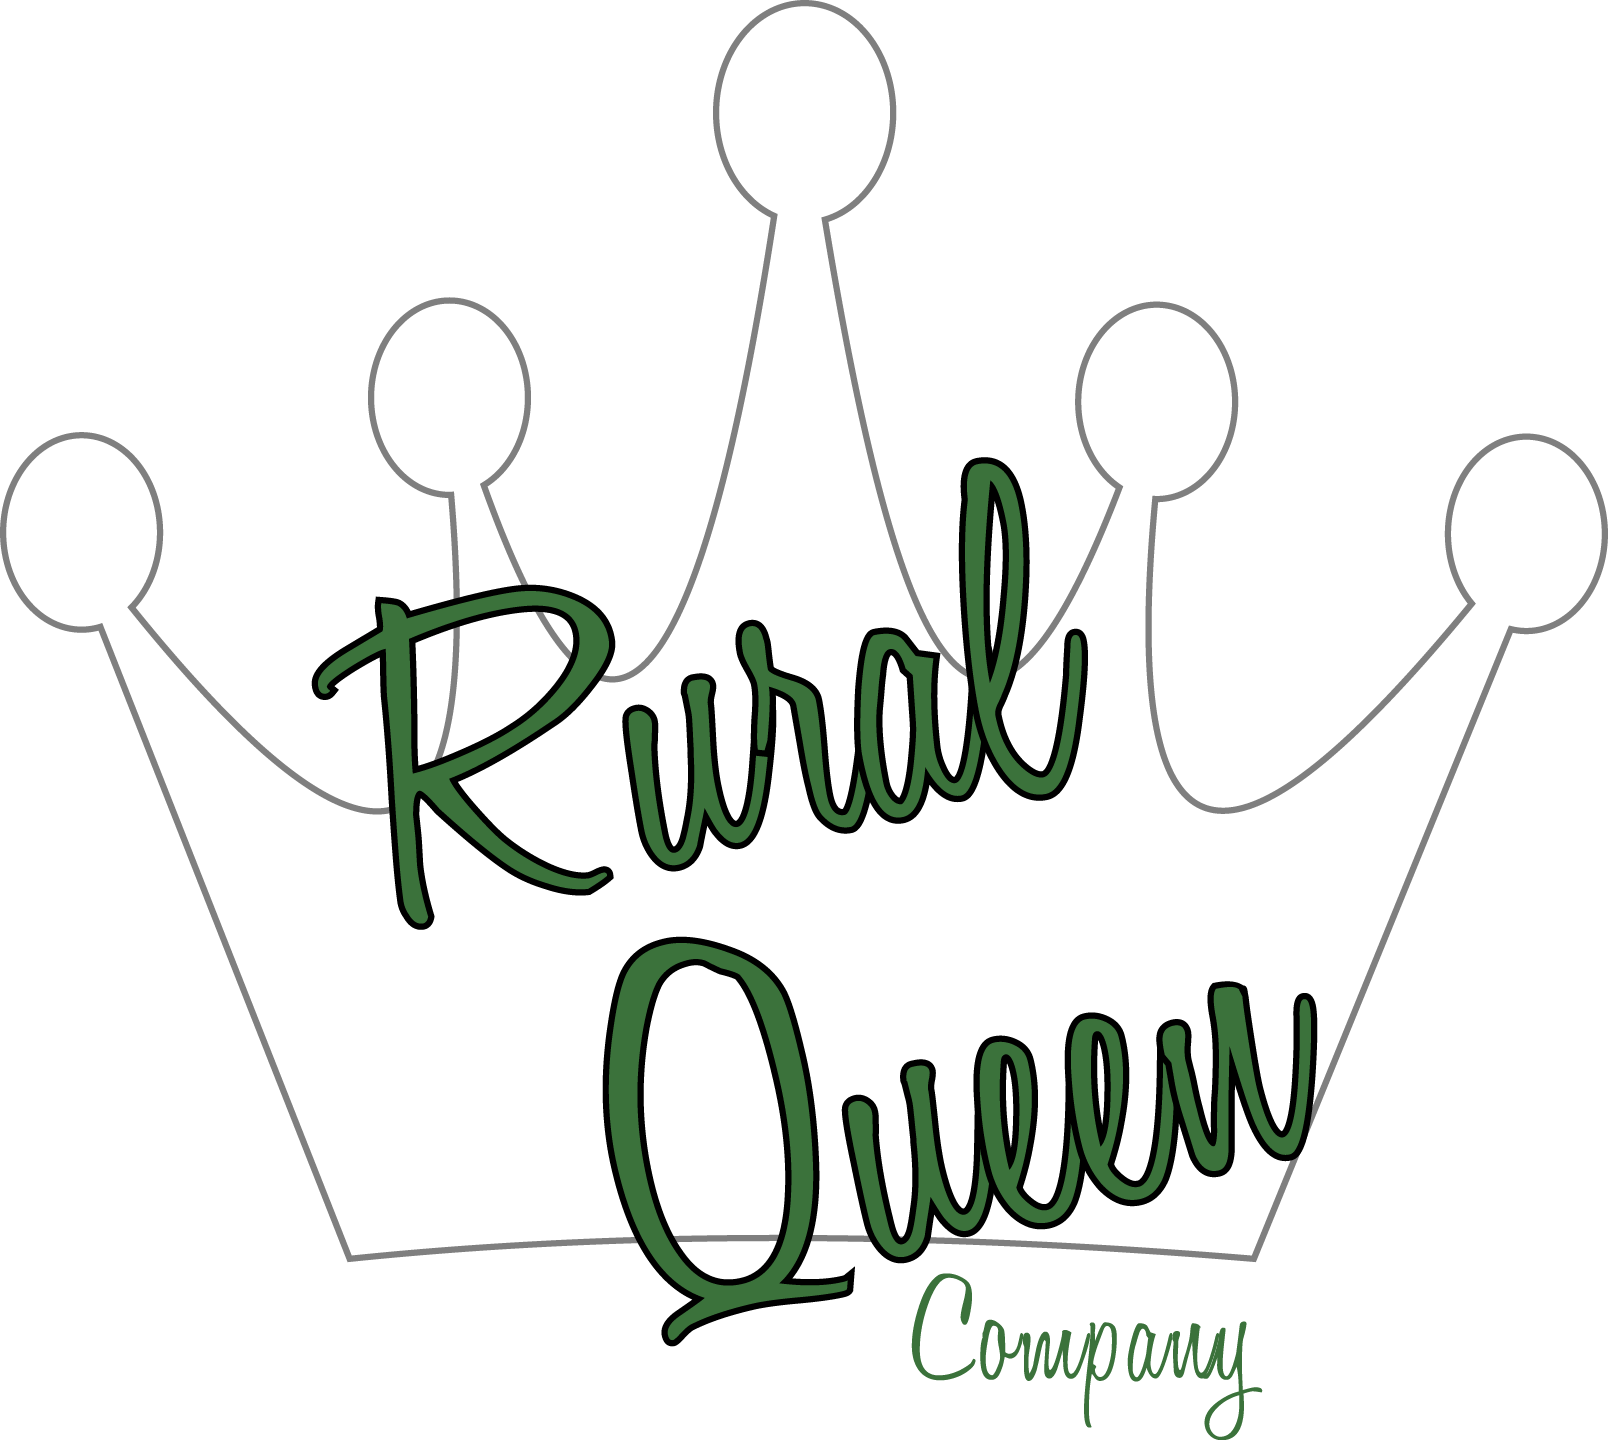 Rural Queen Company